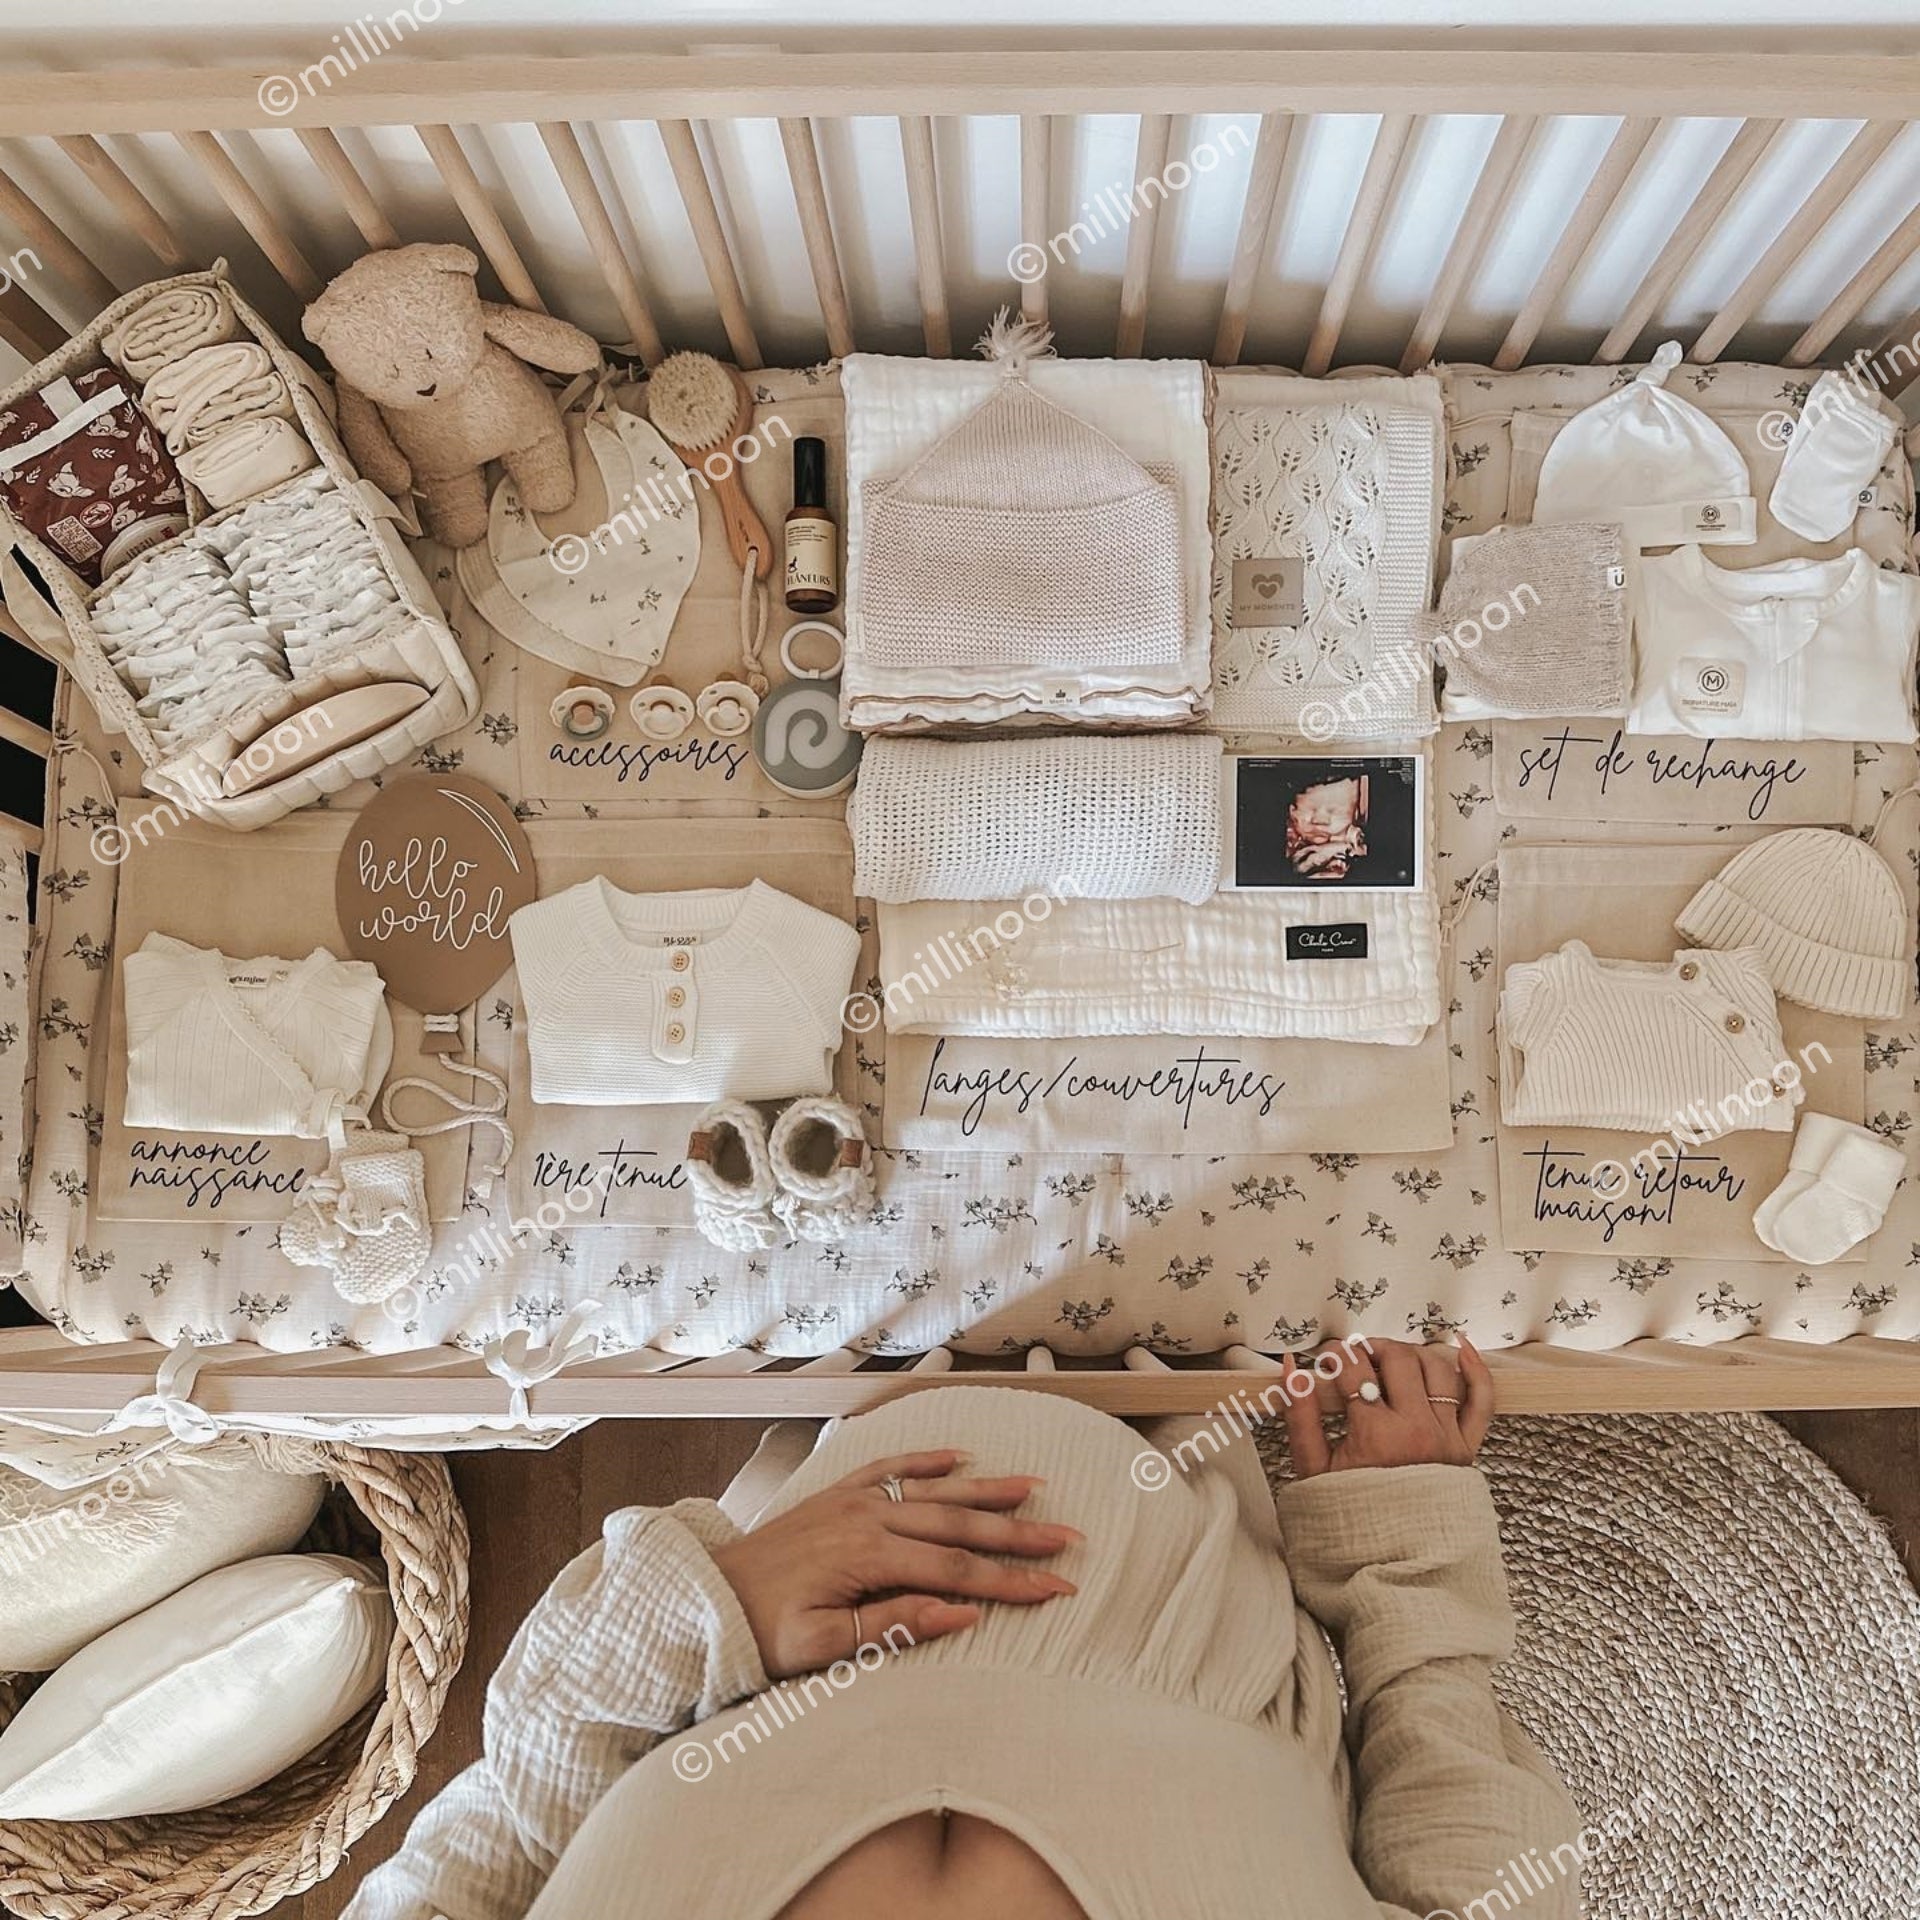 Sets de pochons pour valise maternité